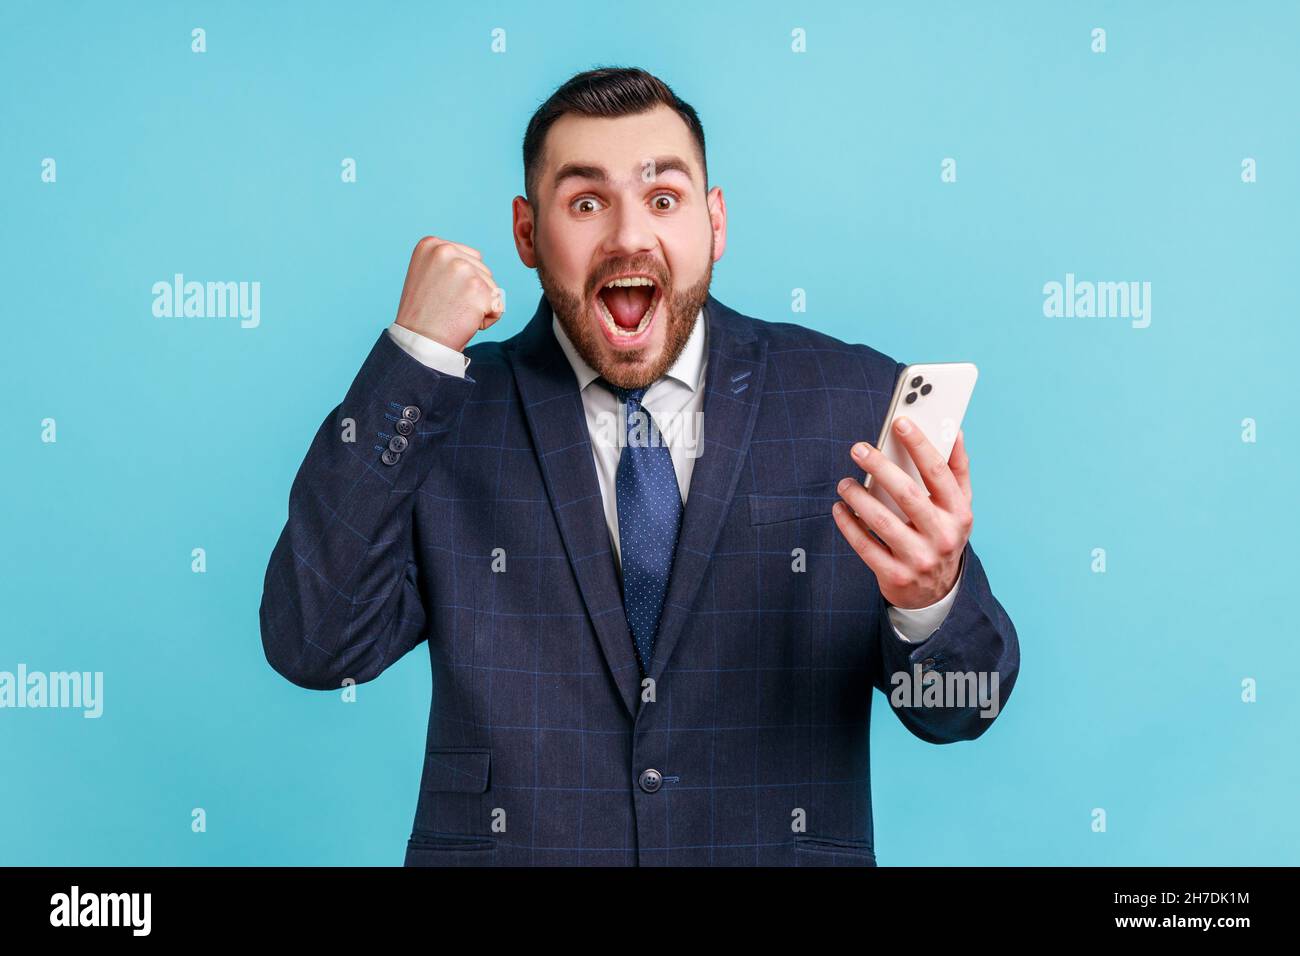 Ich bin Champion. Attraktiver Mann mit Bart trägt dunklen offiziellen Stil Anzug stehen, halten Telefon, machen Selfie und feiern den Sieg. Innenaufnahme des Studios isoliert auf blauem Hintergrund. Stockfoto